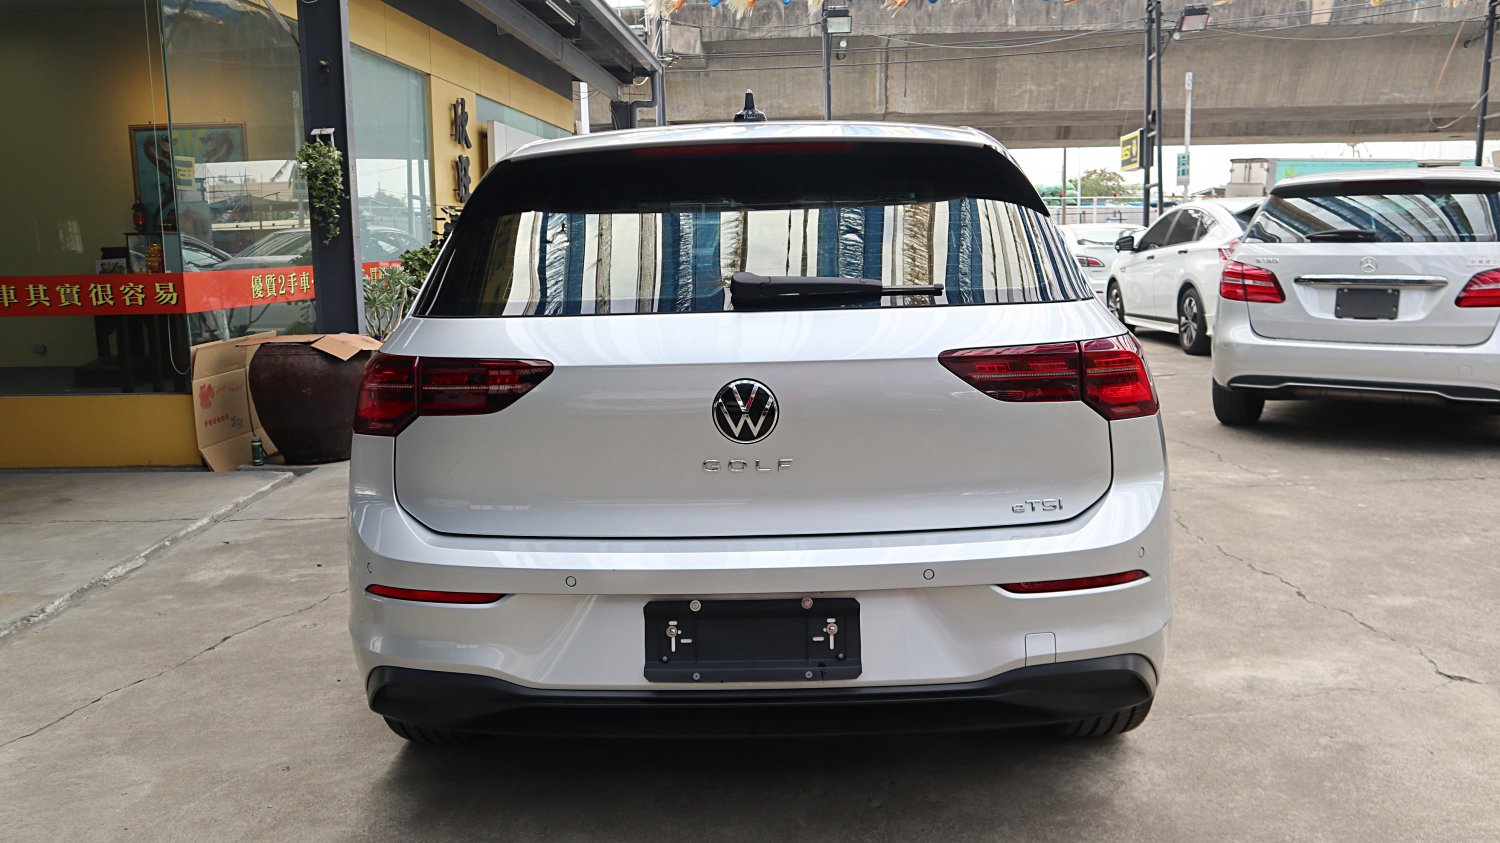 VW 福斯 ／ Golf ／ 2021年 ／ 2021年VW Golf 銀色 福斯中古車 ／ MG車庫(台南)